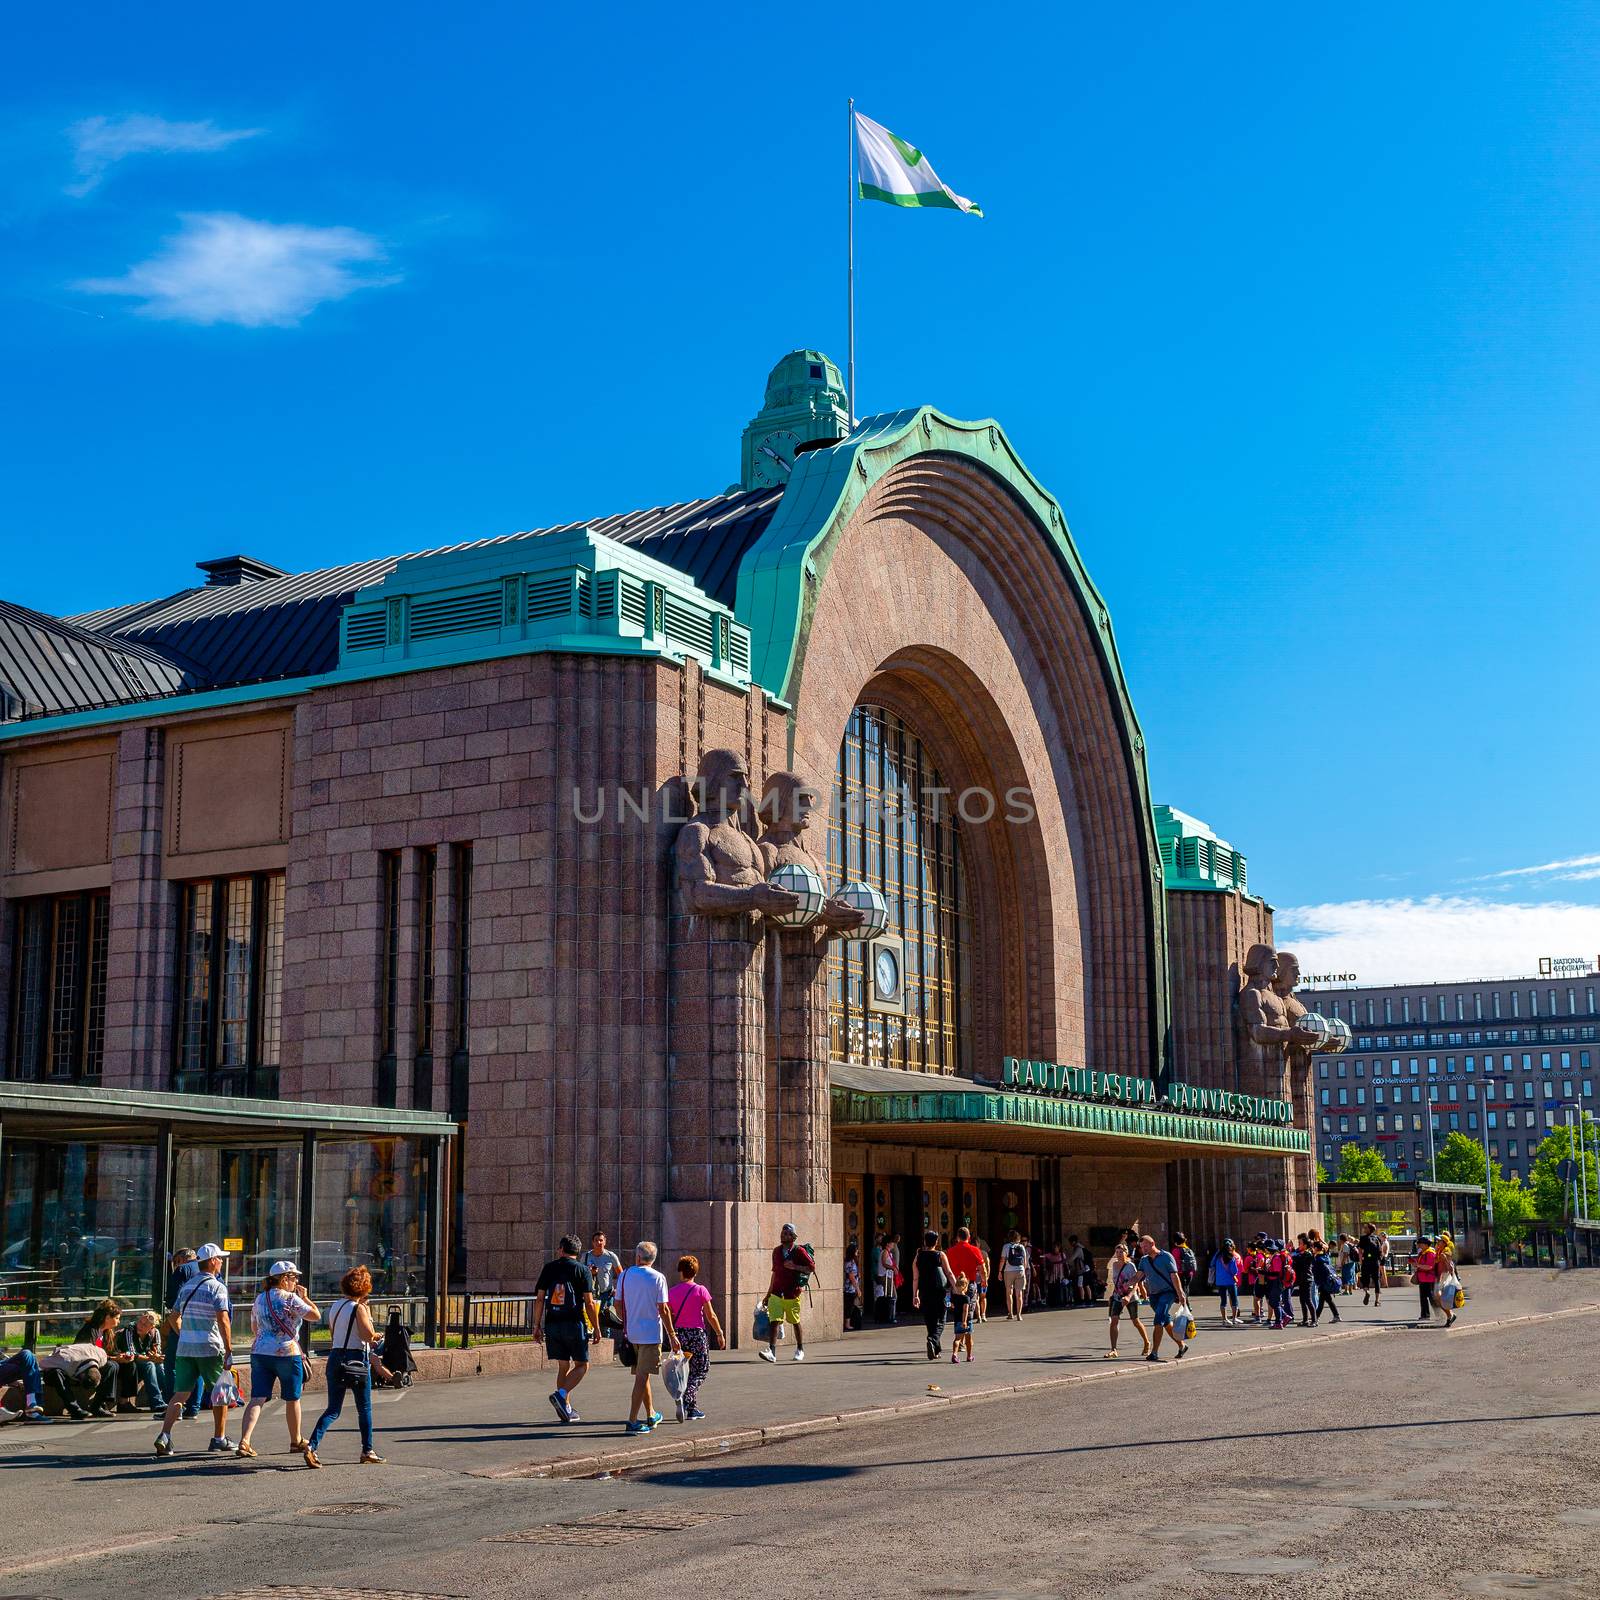 Helsinki Central Station Railway in HELSINKI, FINLAND - 04.08.2018 by 977_ReX_977